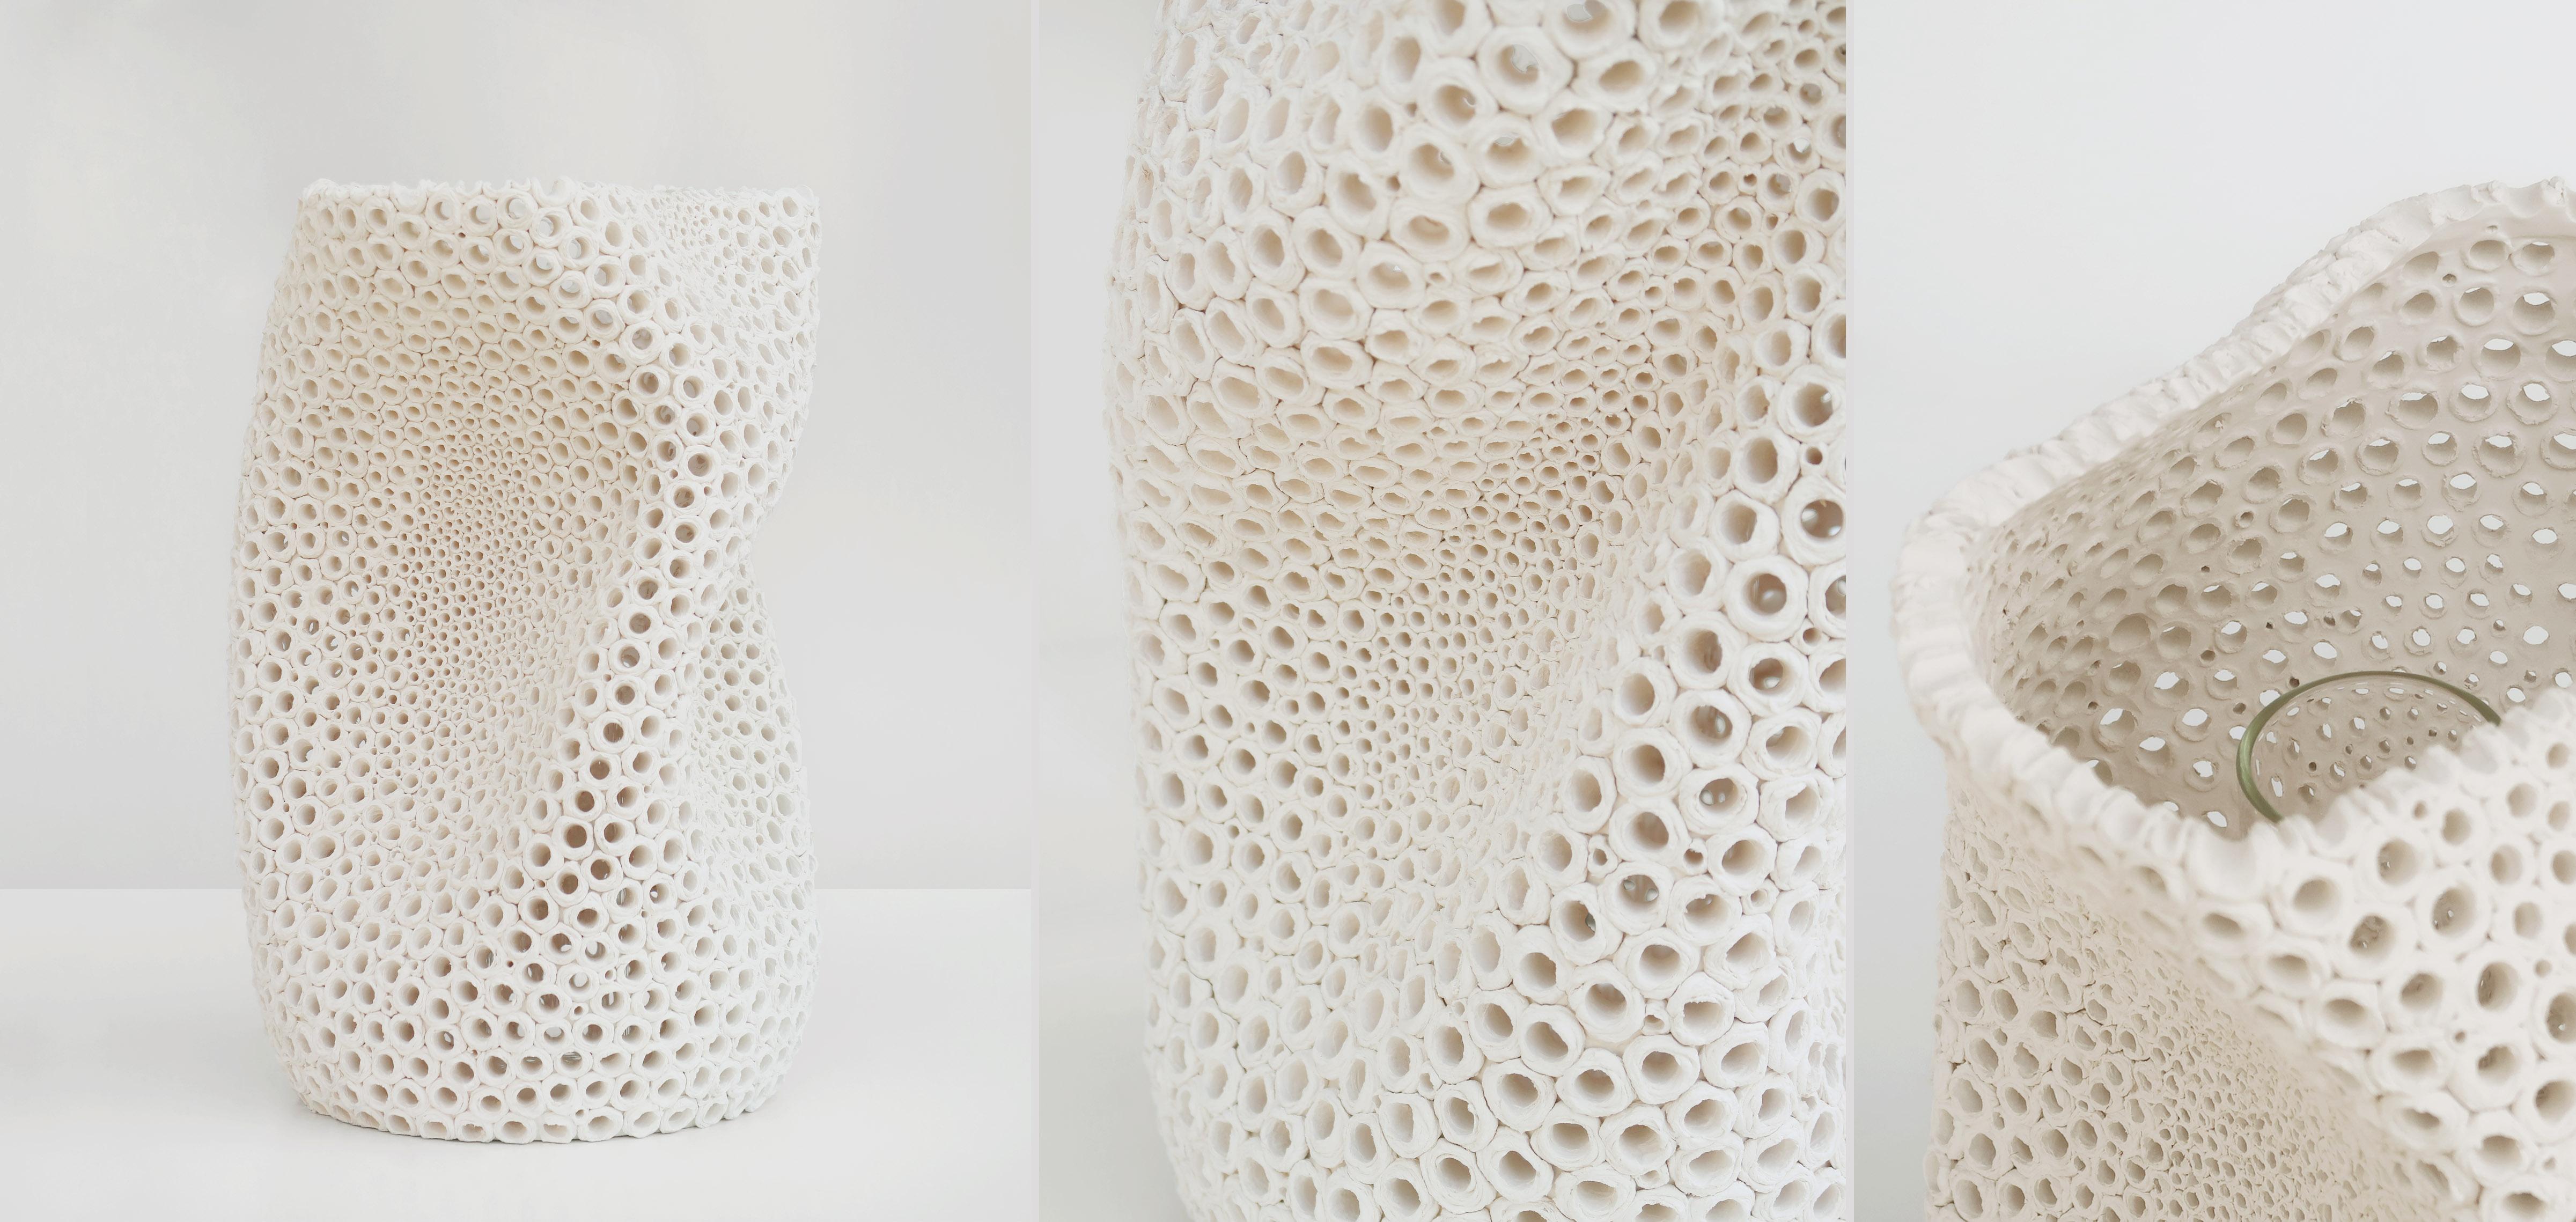 Gewellte Vase aus Steingut in freier Form mit abgestuften Handpiercings von Gilles Caffier. Aus cremefarbenem Steingut. Die Vase ist mit einem Glaseinsatz für Blumen versehen. Aus einer Auflage von 90 Stück, nummeriert und vom Designer signiert.